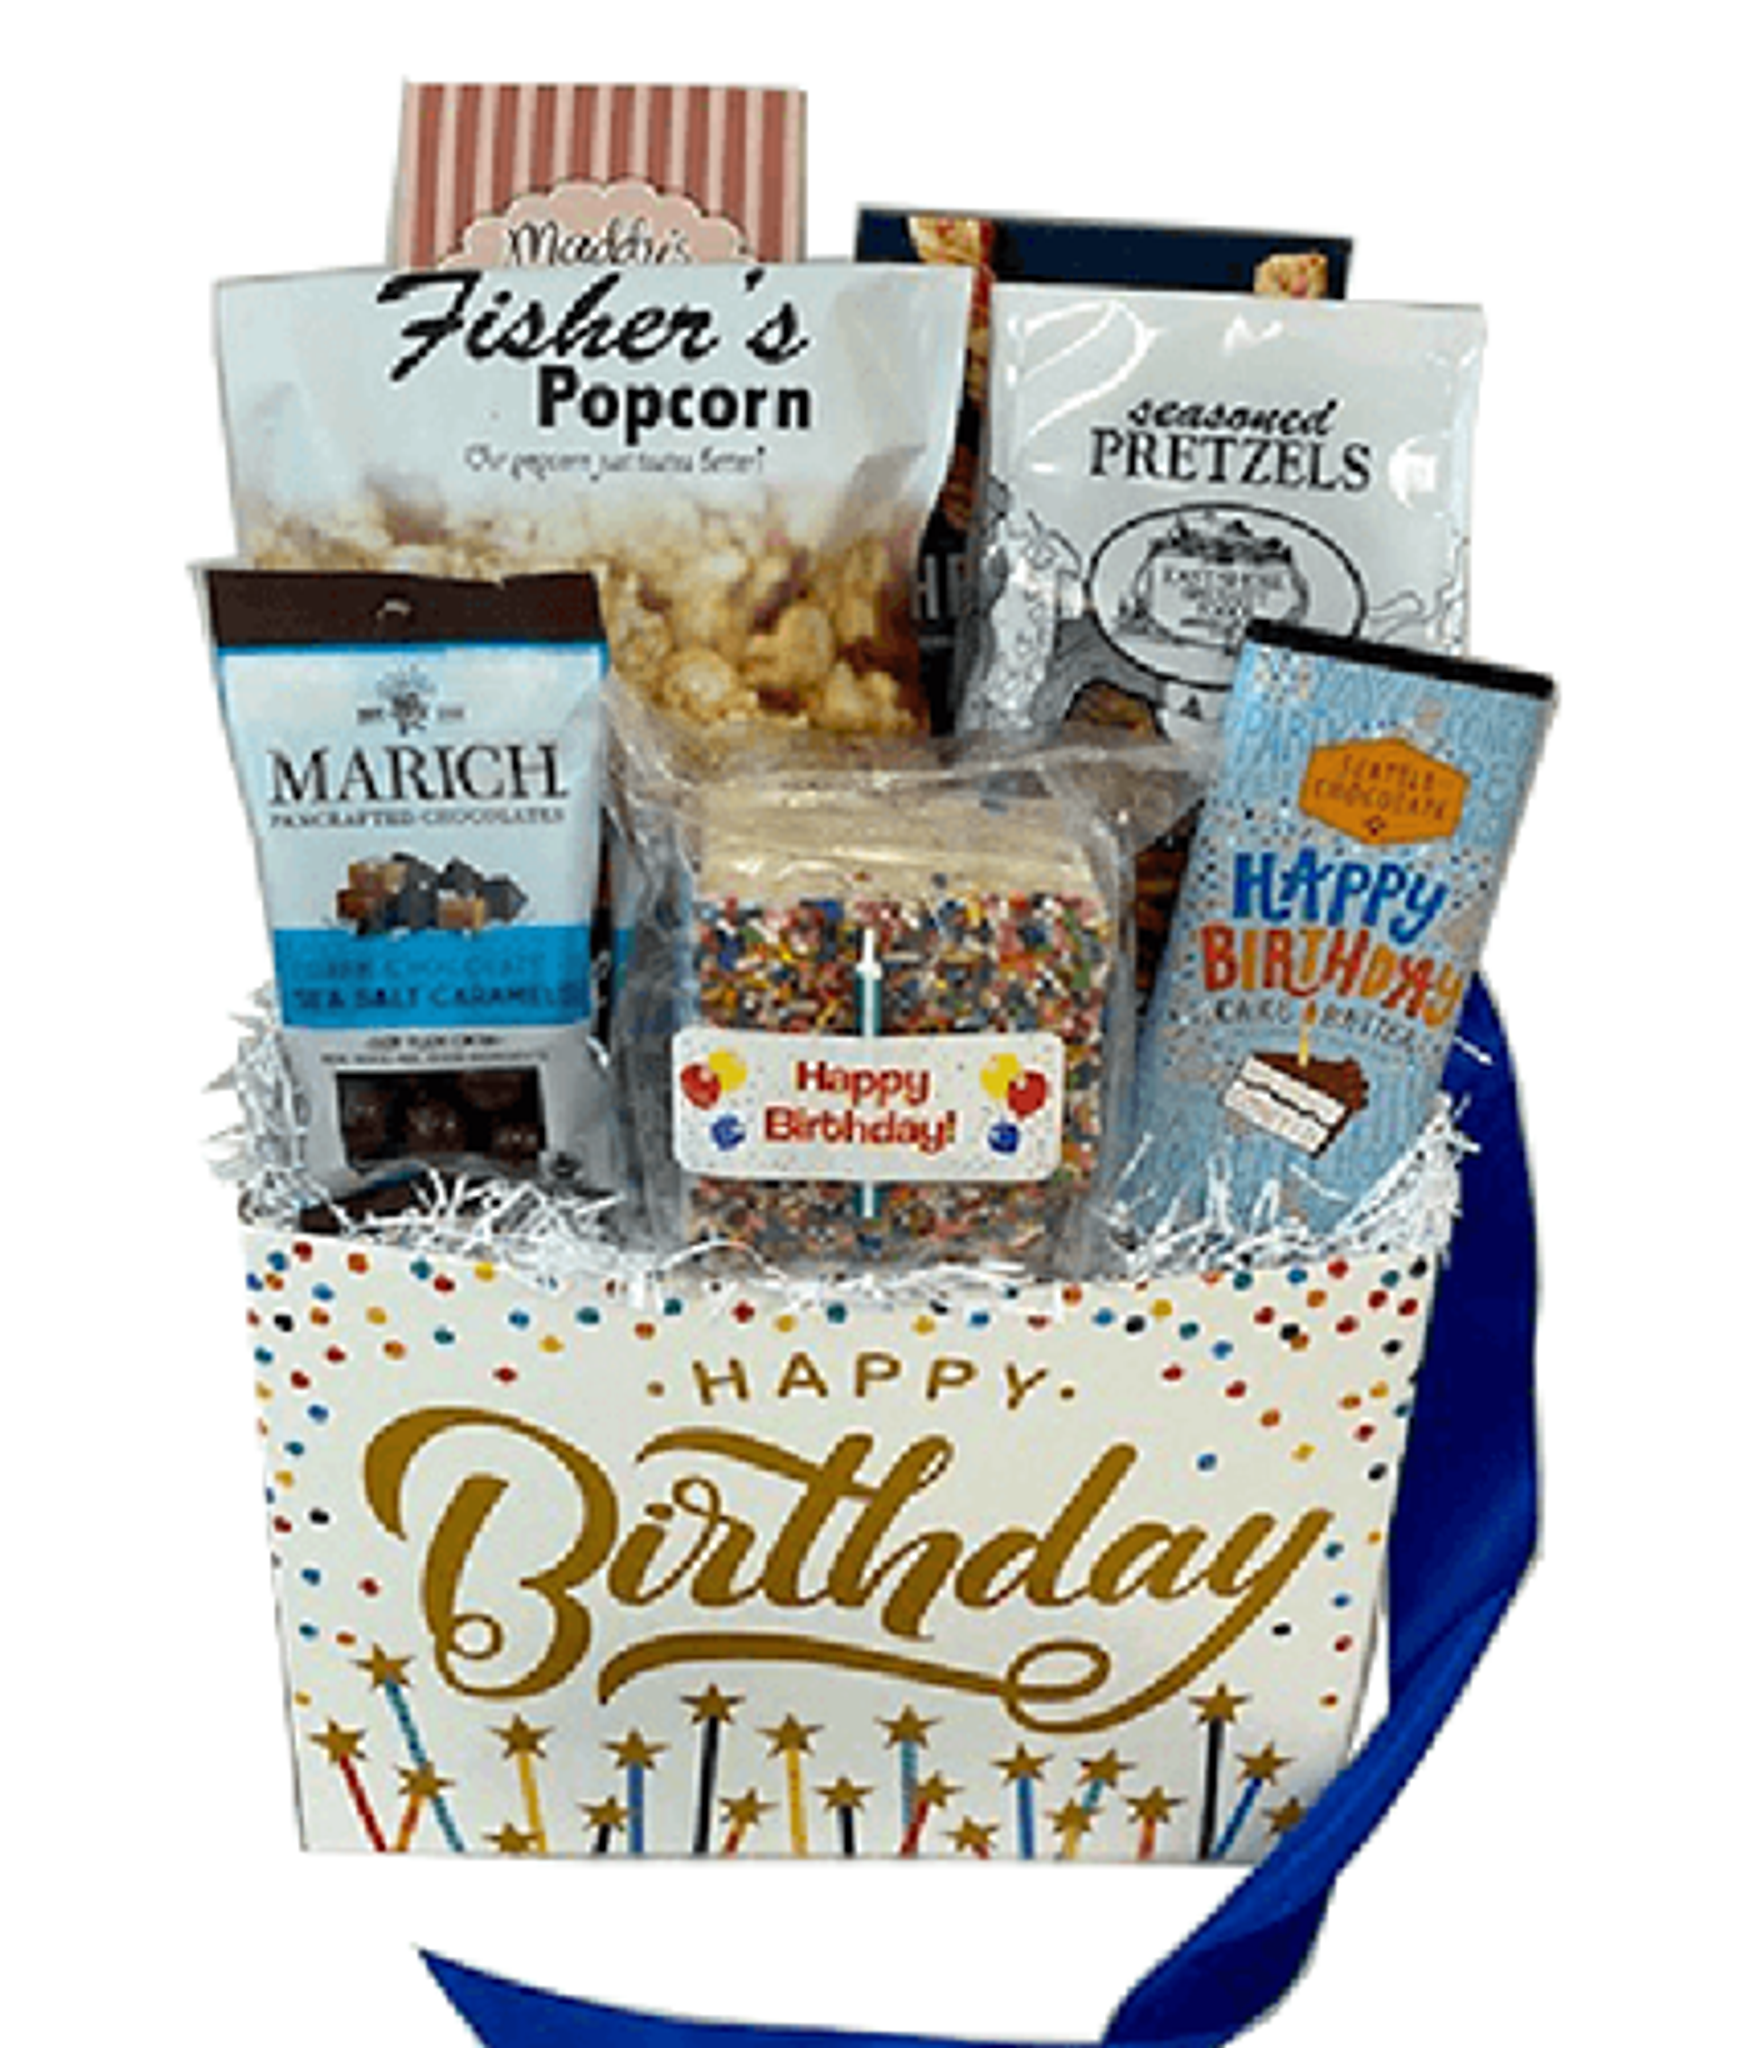 Happy Birthday Crispery Cake Gift Basket Store Maryland Gift Basket